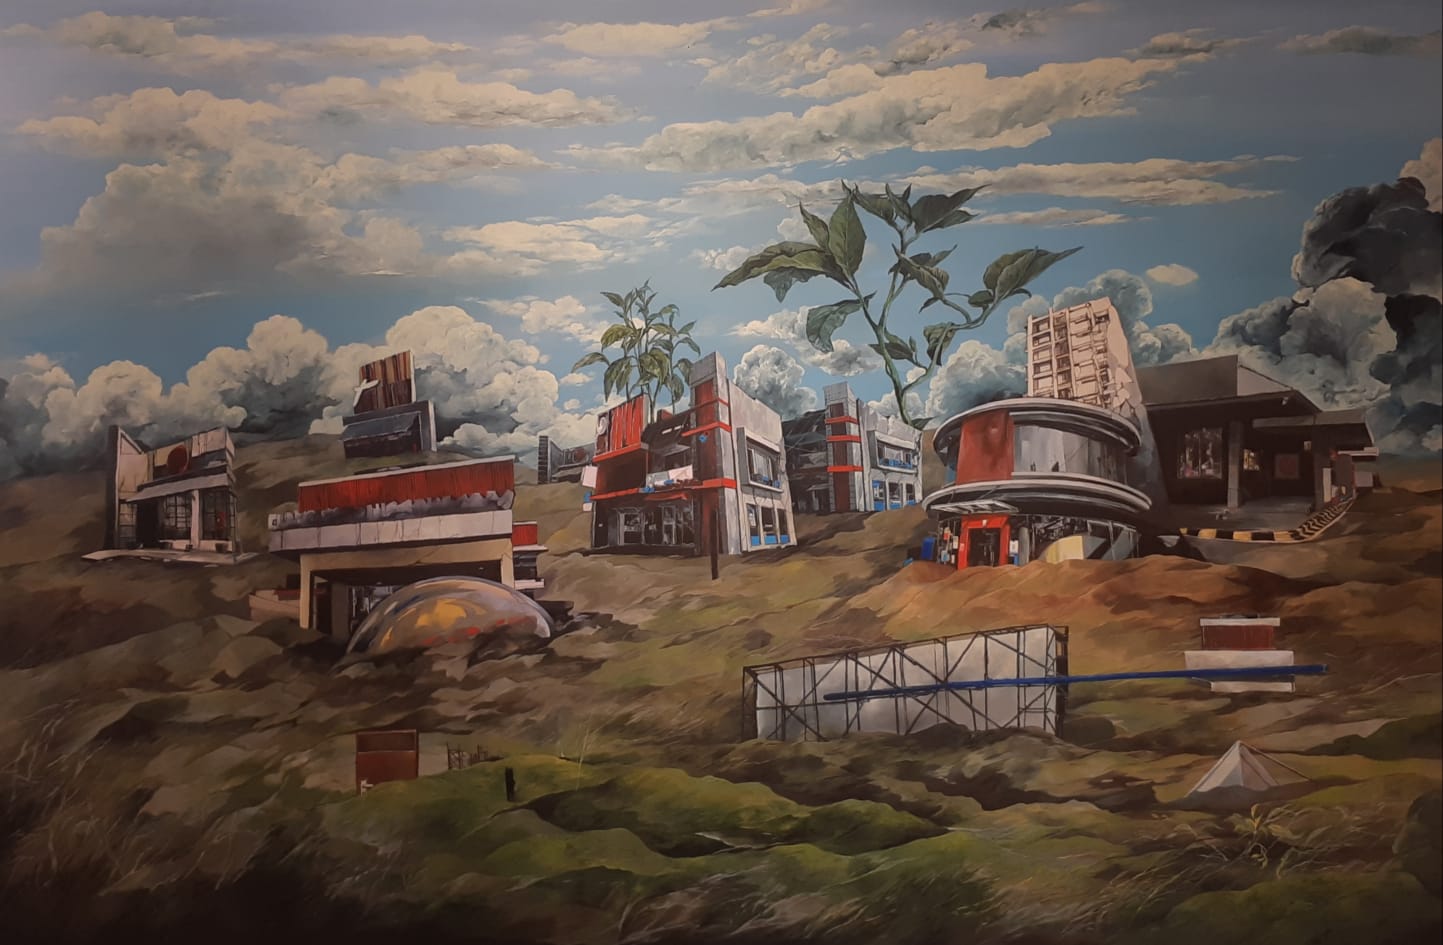  Koleksi karya pameran tunggal Prabu Perdana berjudul Growing Land di Artsphere Gallery, Jakarta. (Sumber gambar: Hypeabis.id/Prasetyo Agung)